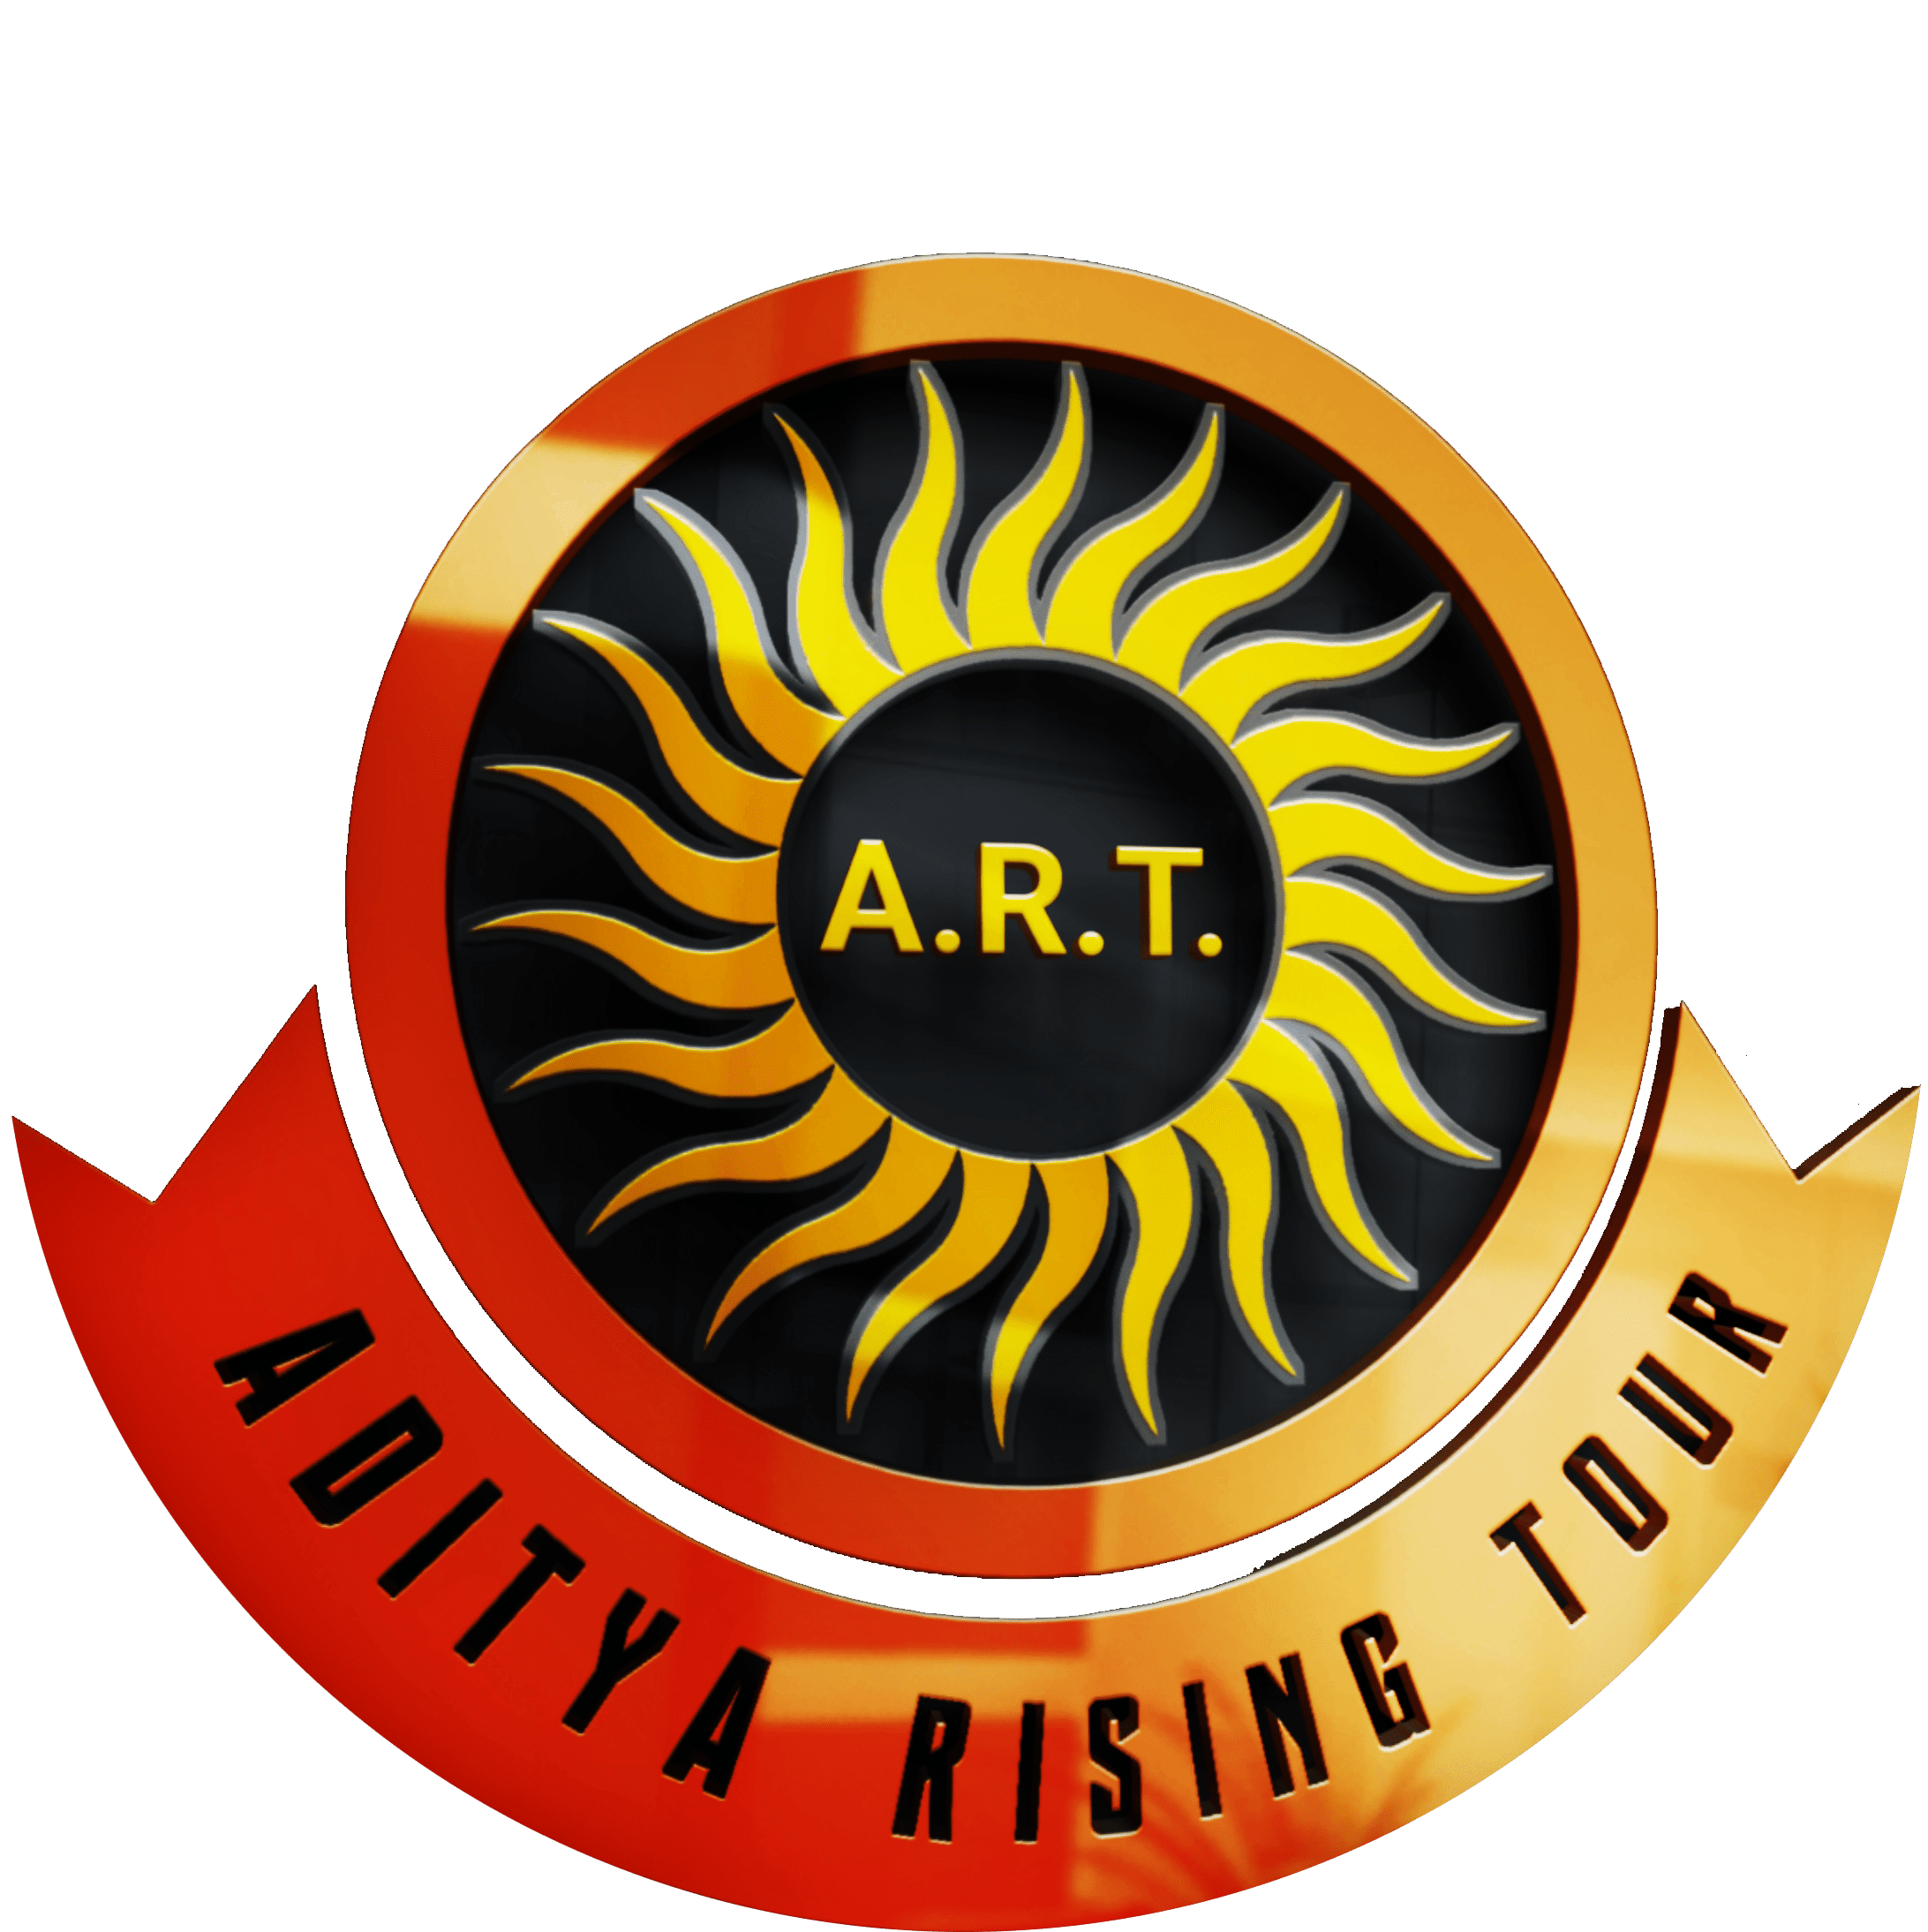 Aditya Rising Tour Llp